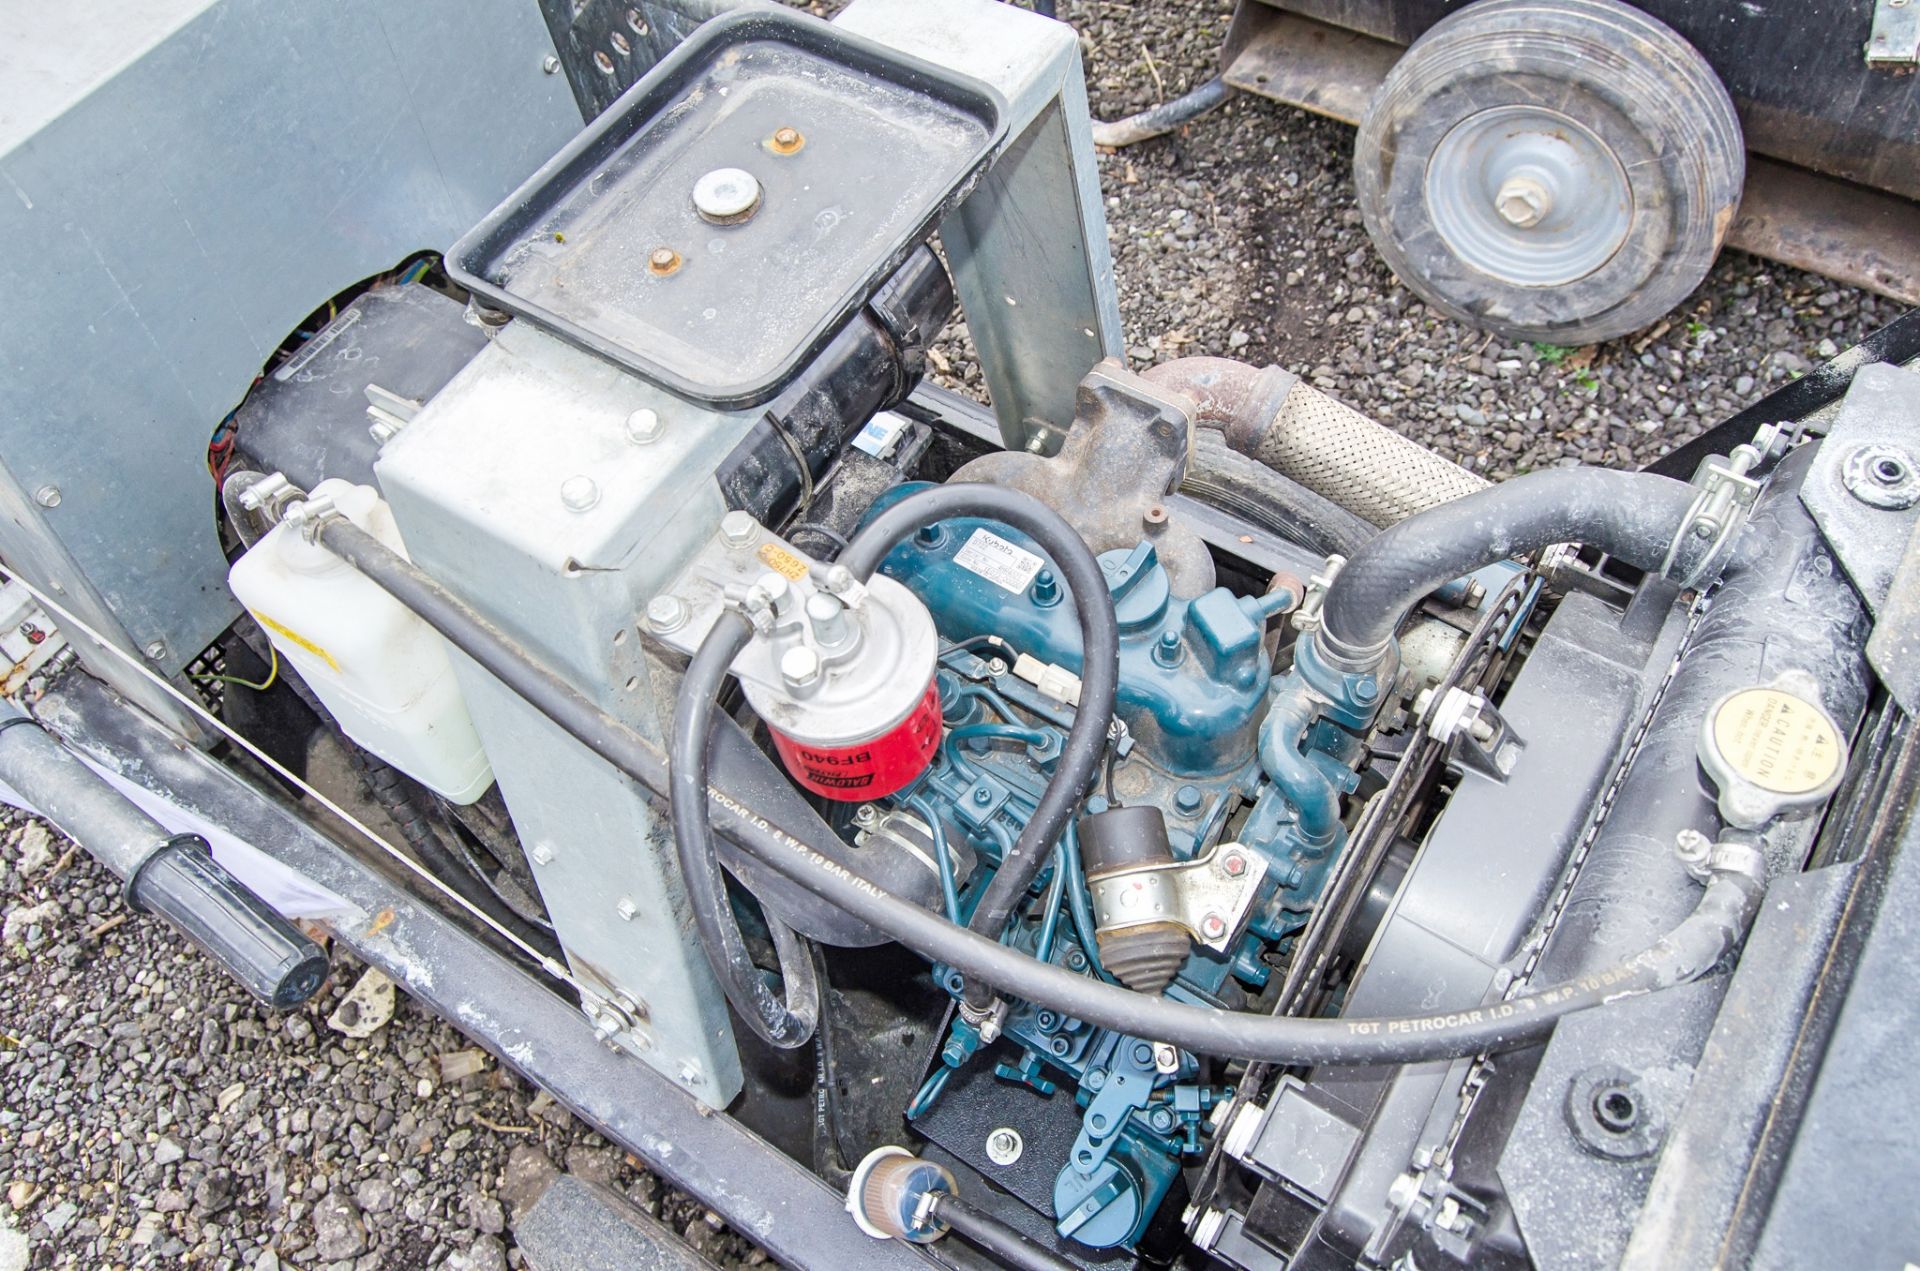 Harrington SKD100 10 kva diesel generator S/N: 2924816 Recorded hours: 3119 A979336 - Image 4 of 4